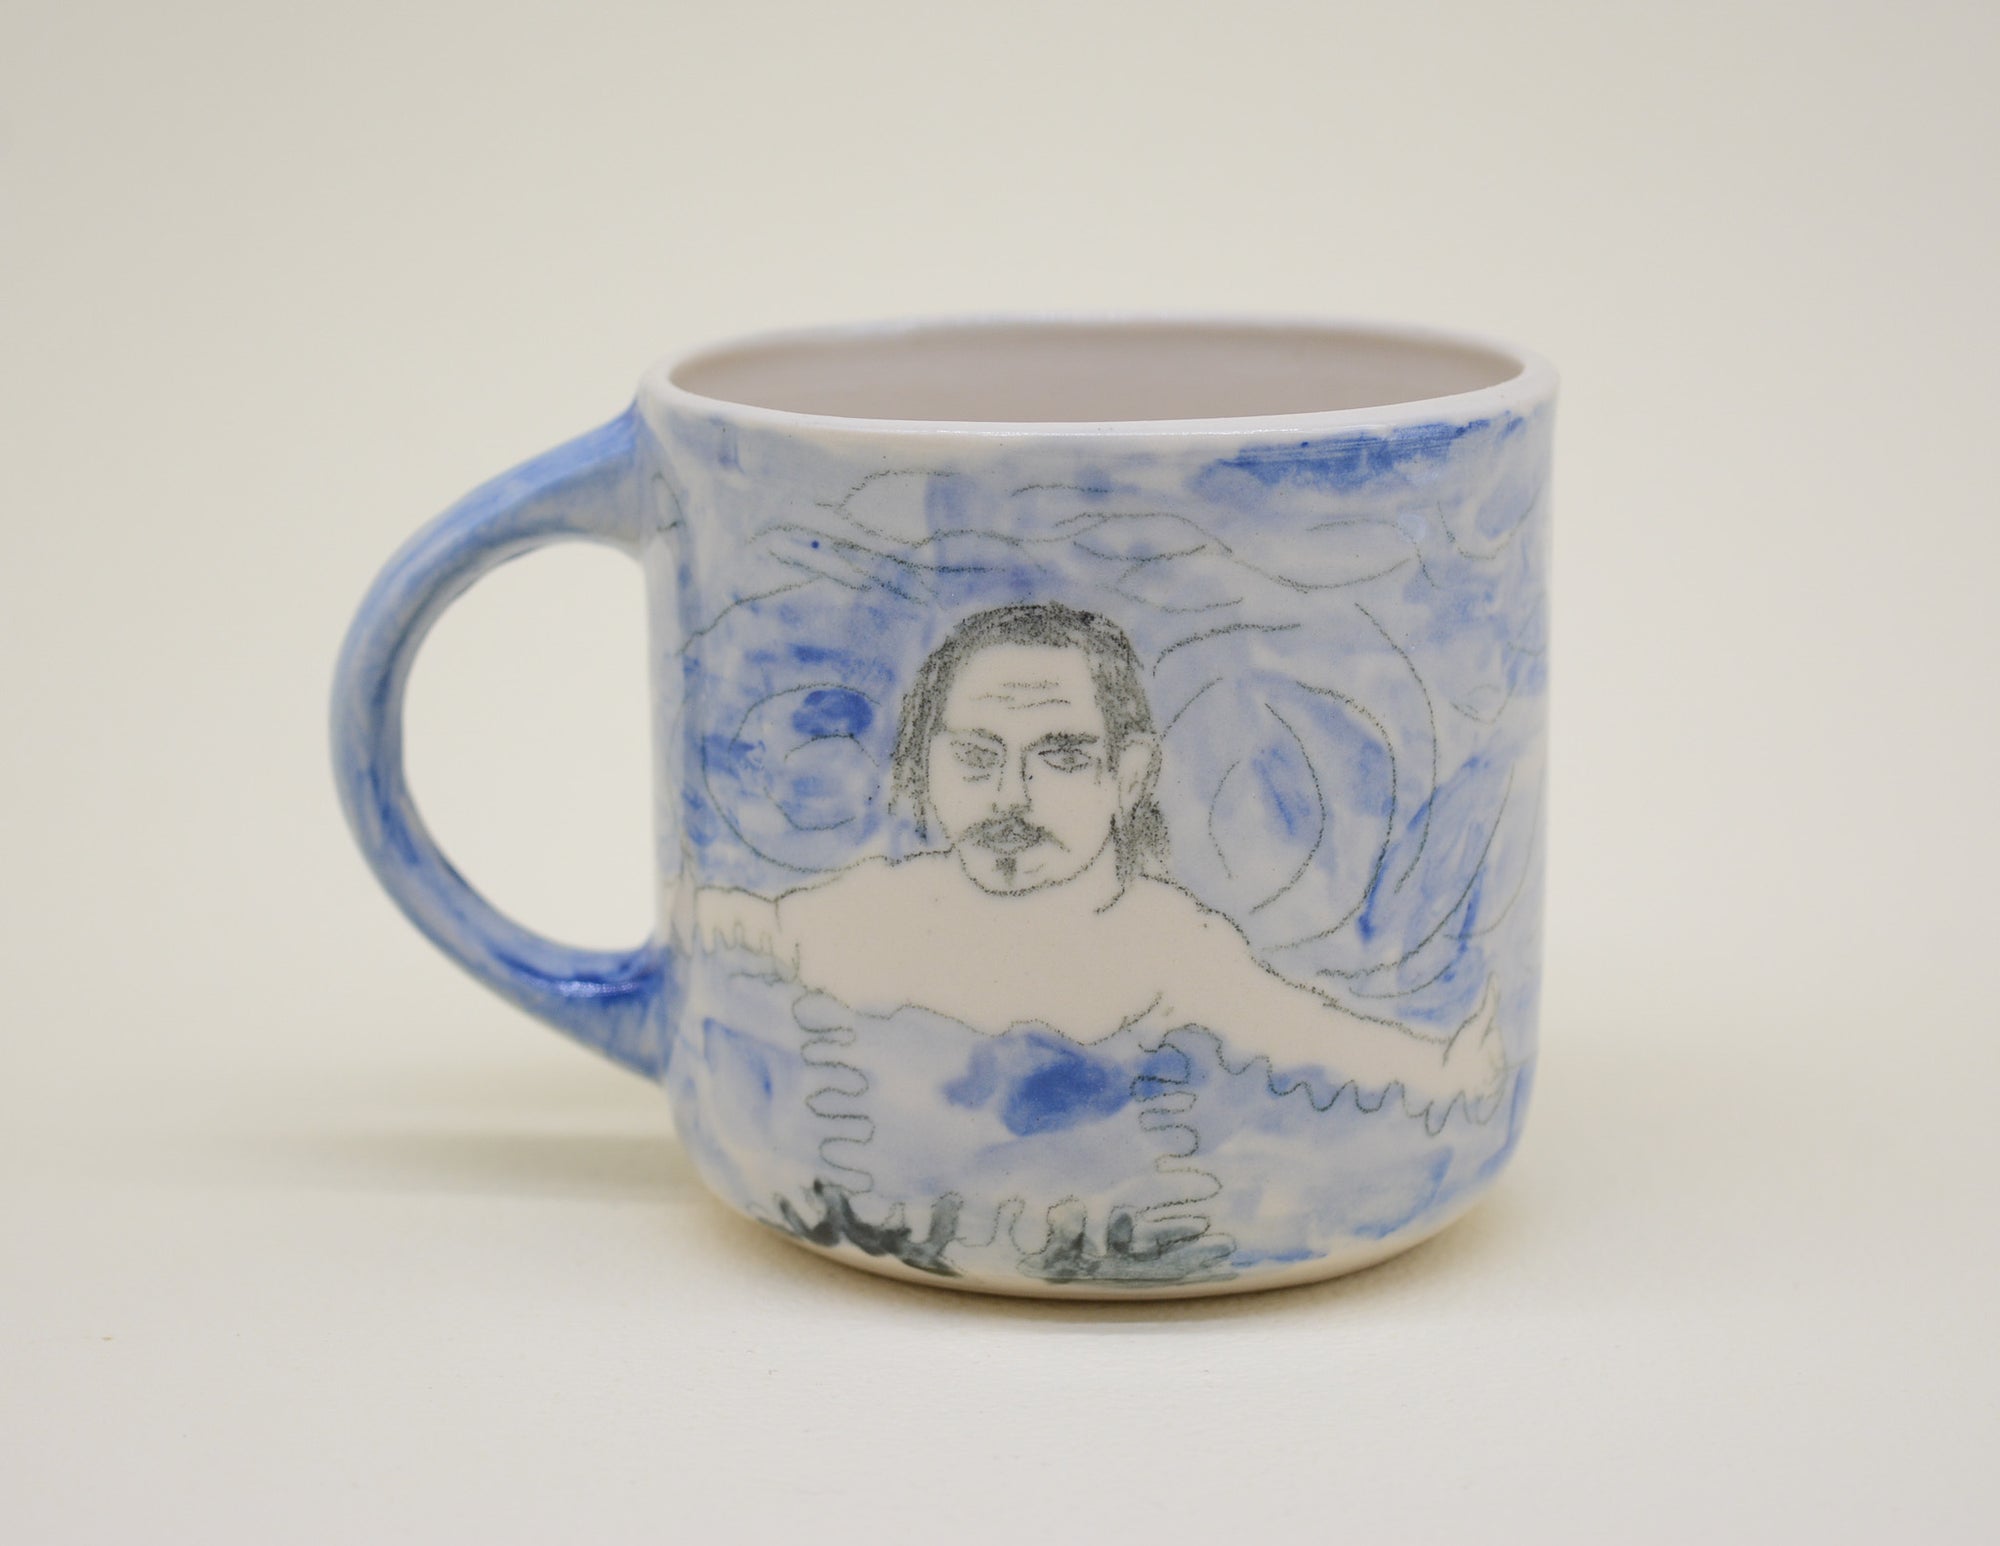 The Swimmer Mug